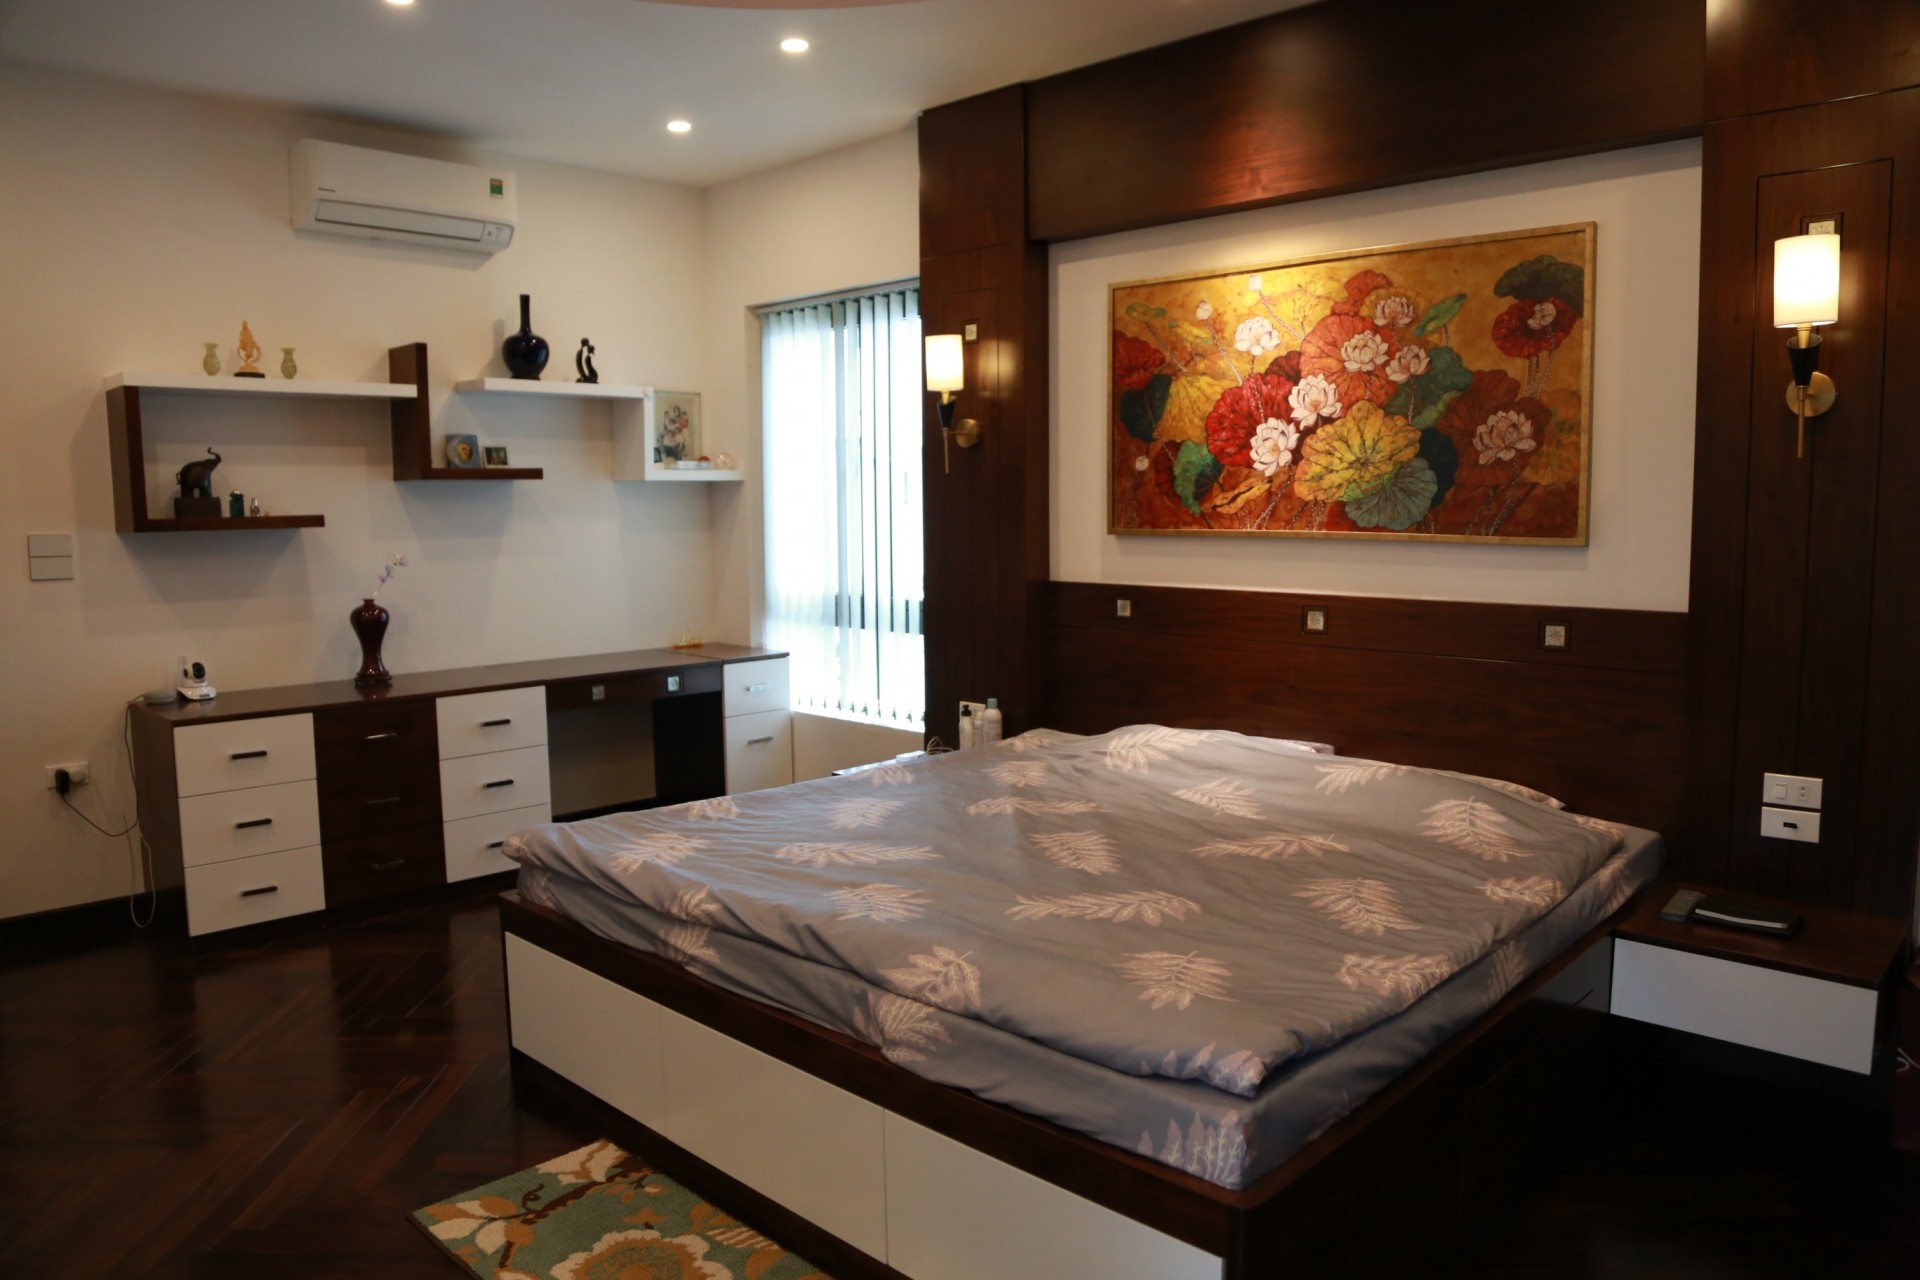 
Phòng ngủ của vợ chồng chủ nhà với sự tối giản, gọn hàng, điểm nhấn là bức tranh sơn mài hoa sen
